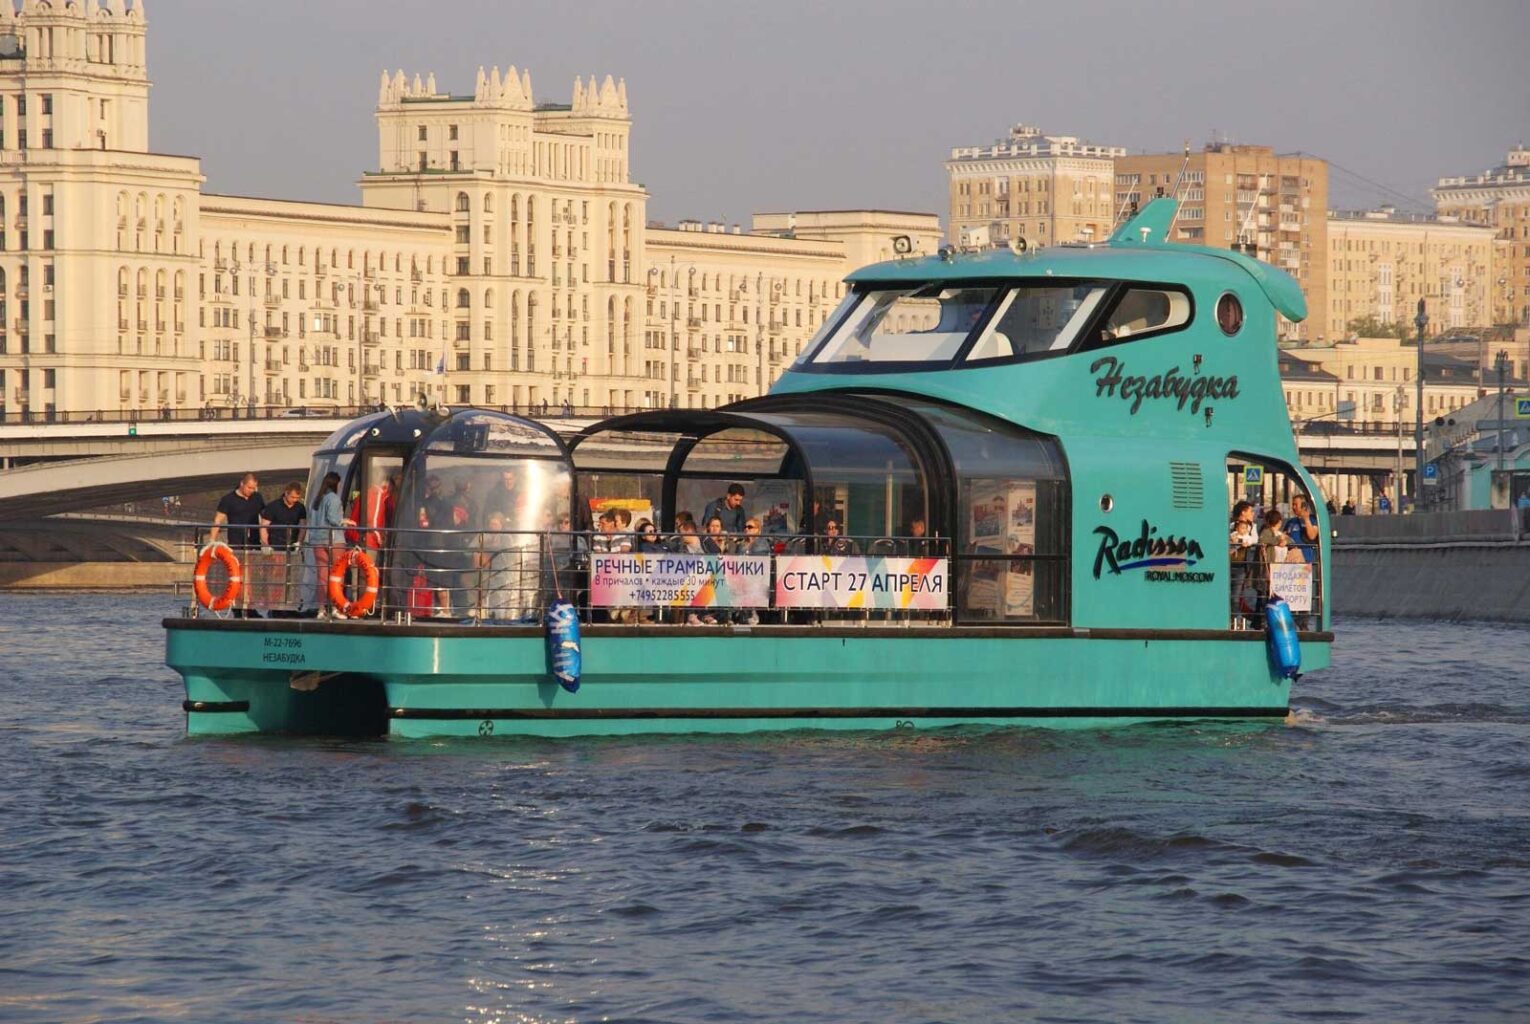 Зеленый речной трамвайчик Radisoon в Москва-реке на экскурсии